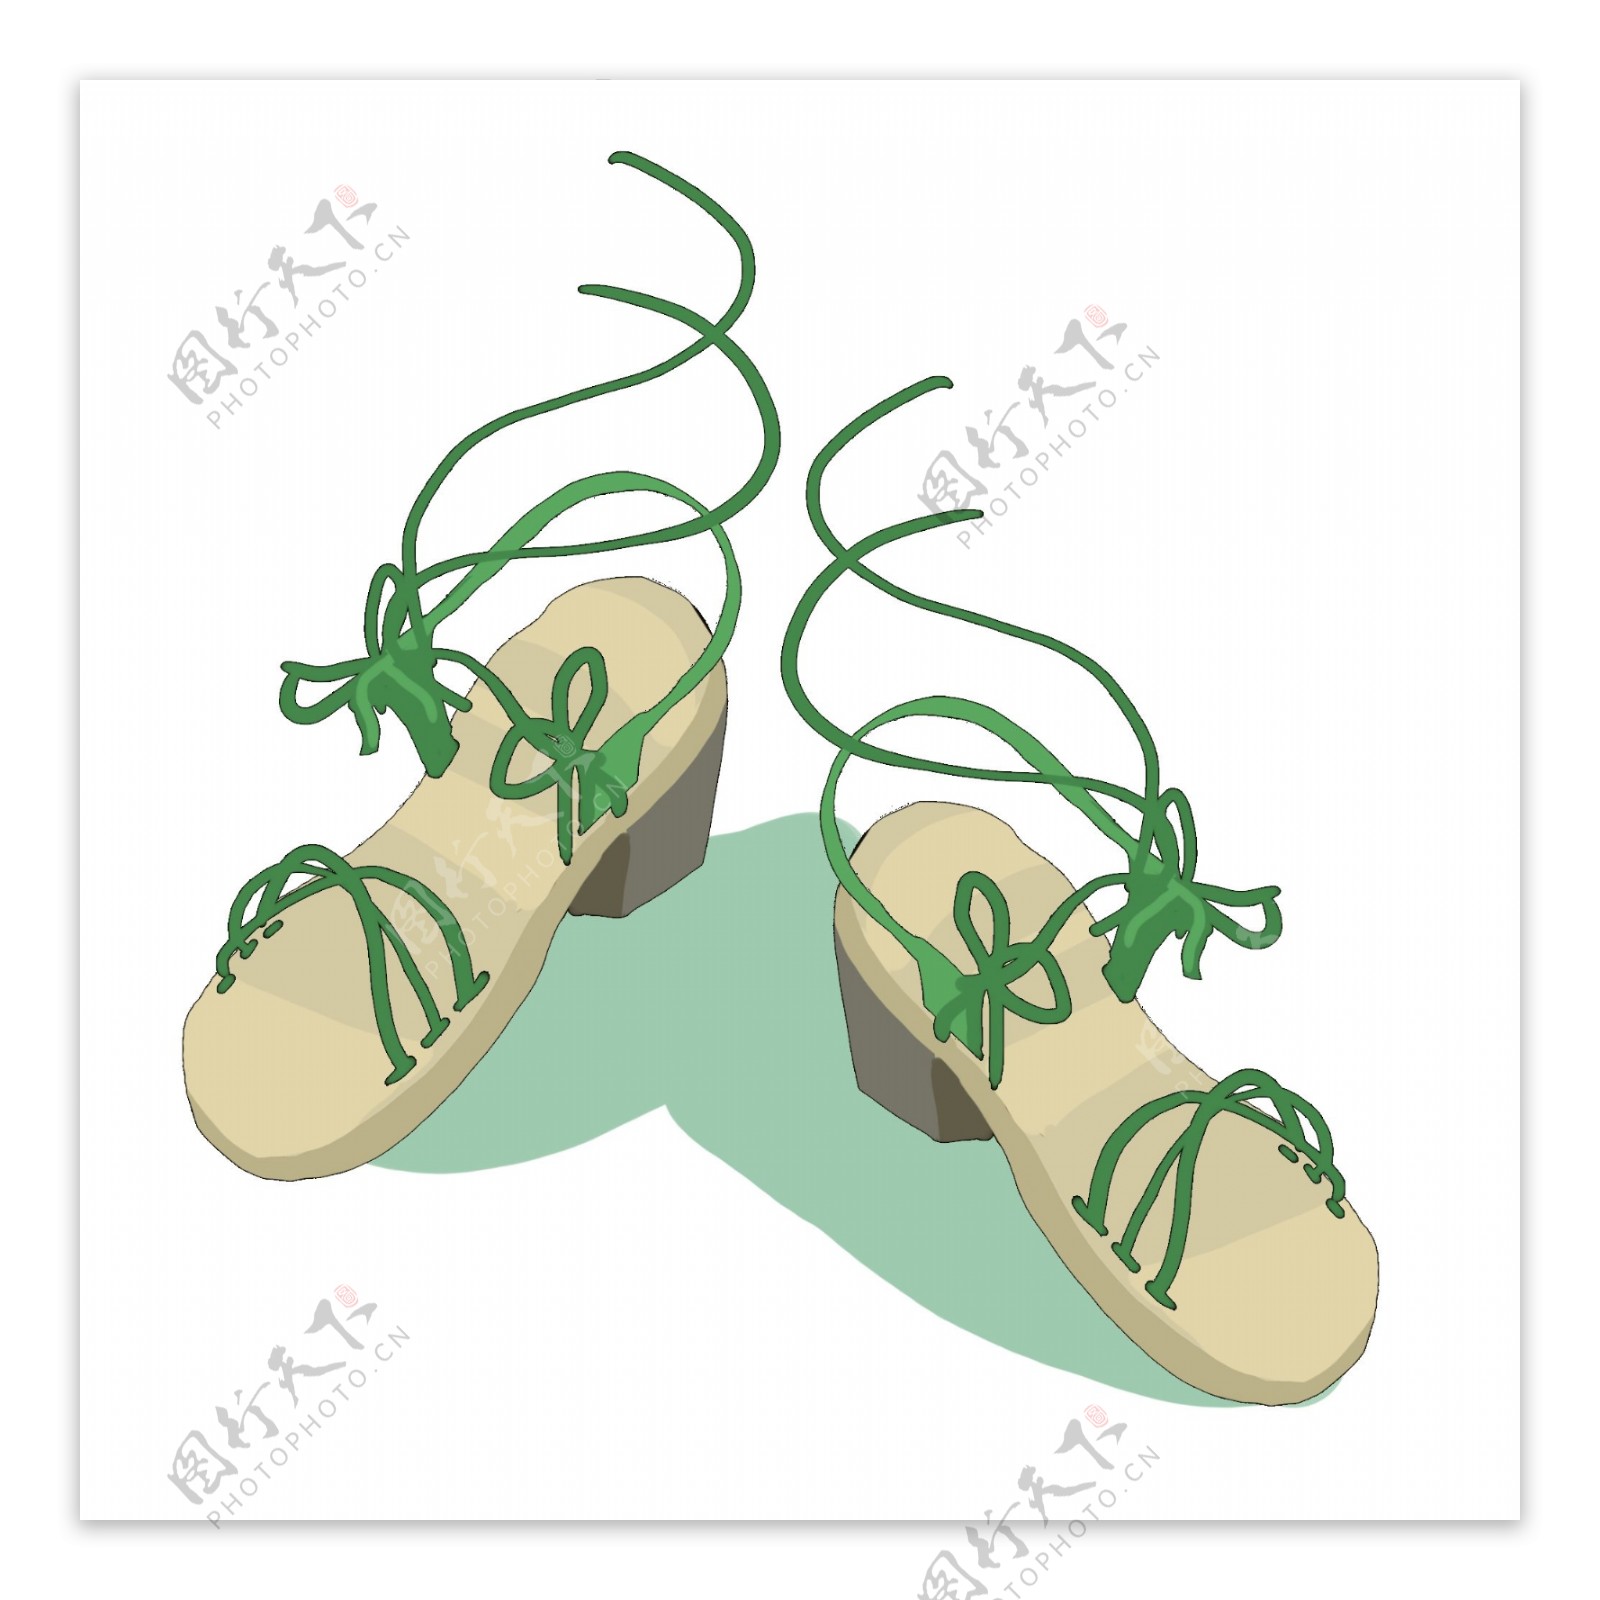 绿色拖鞋